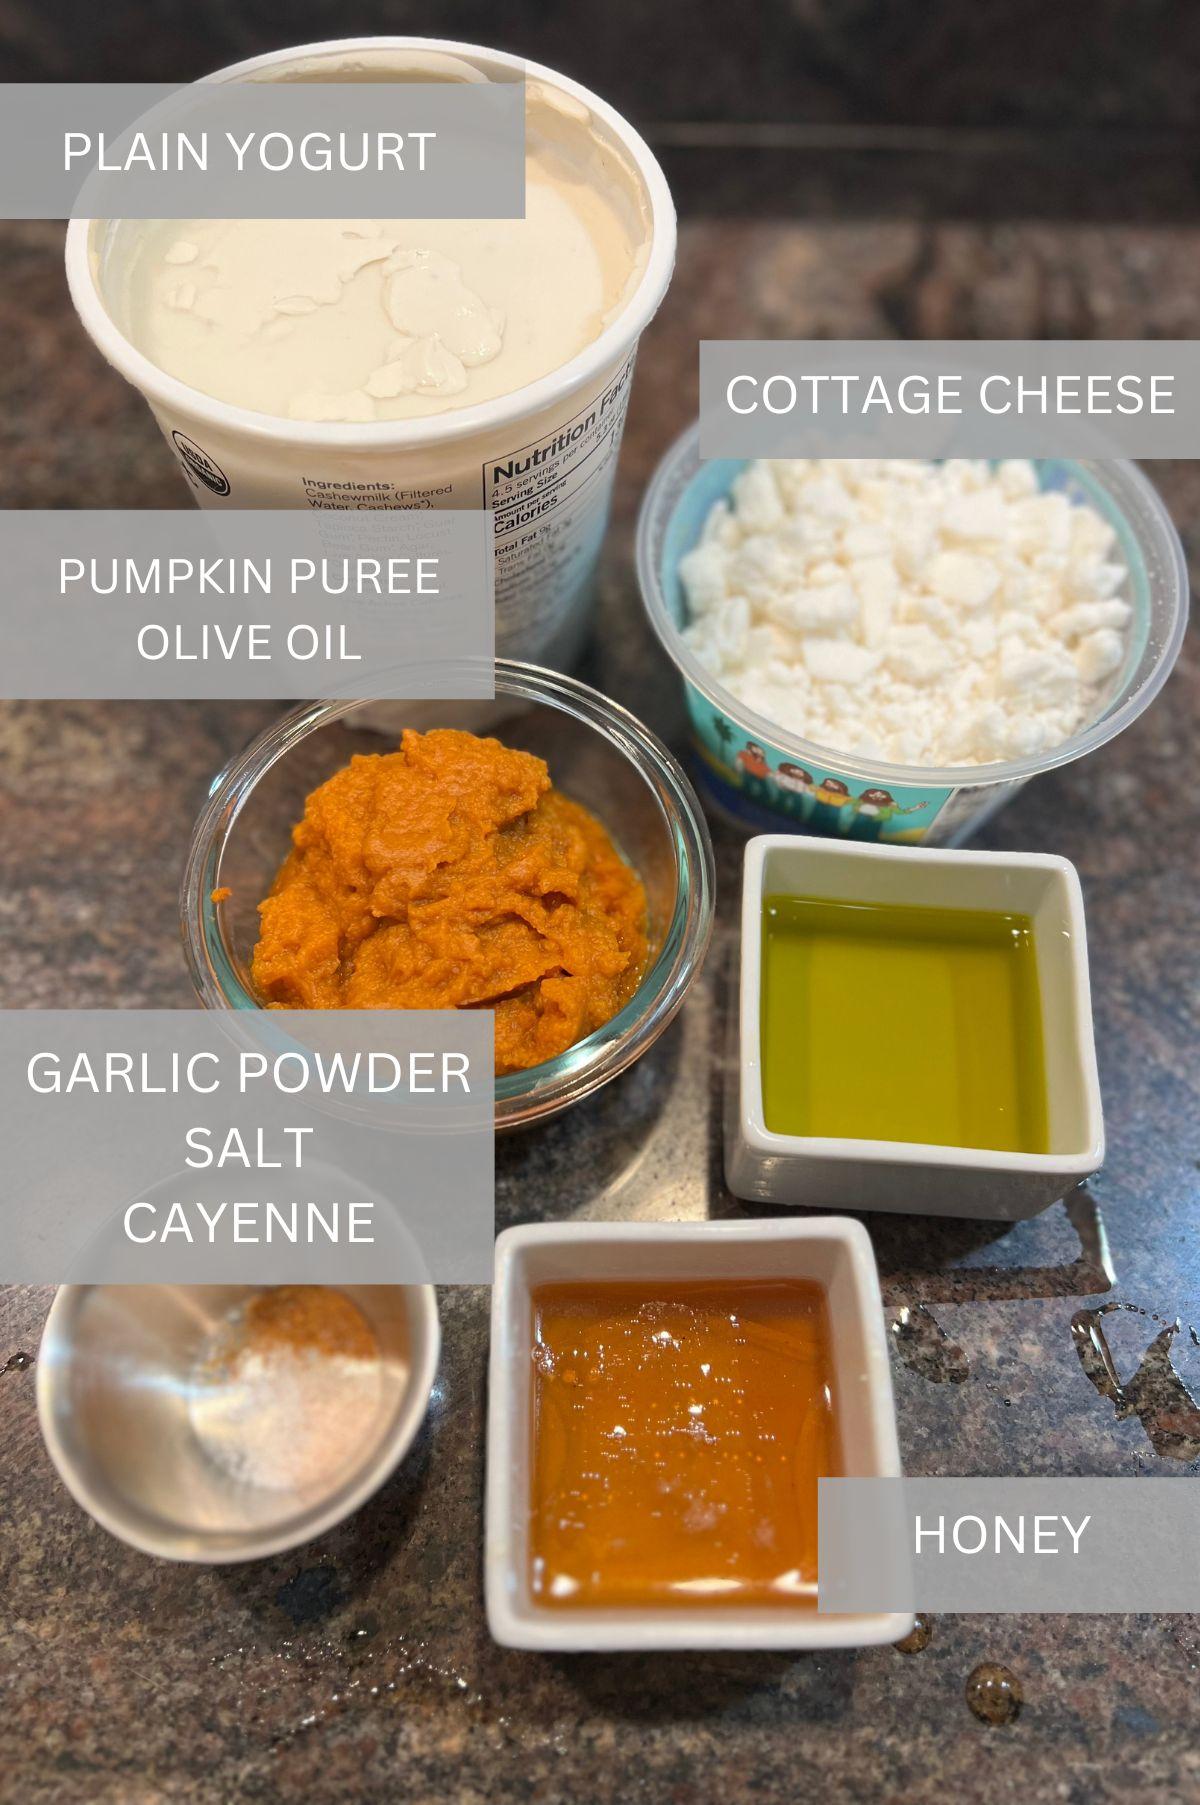 Pumpkin Feta Dip Ingredients